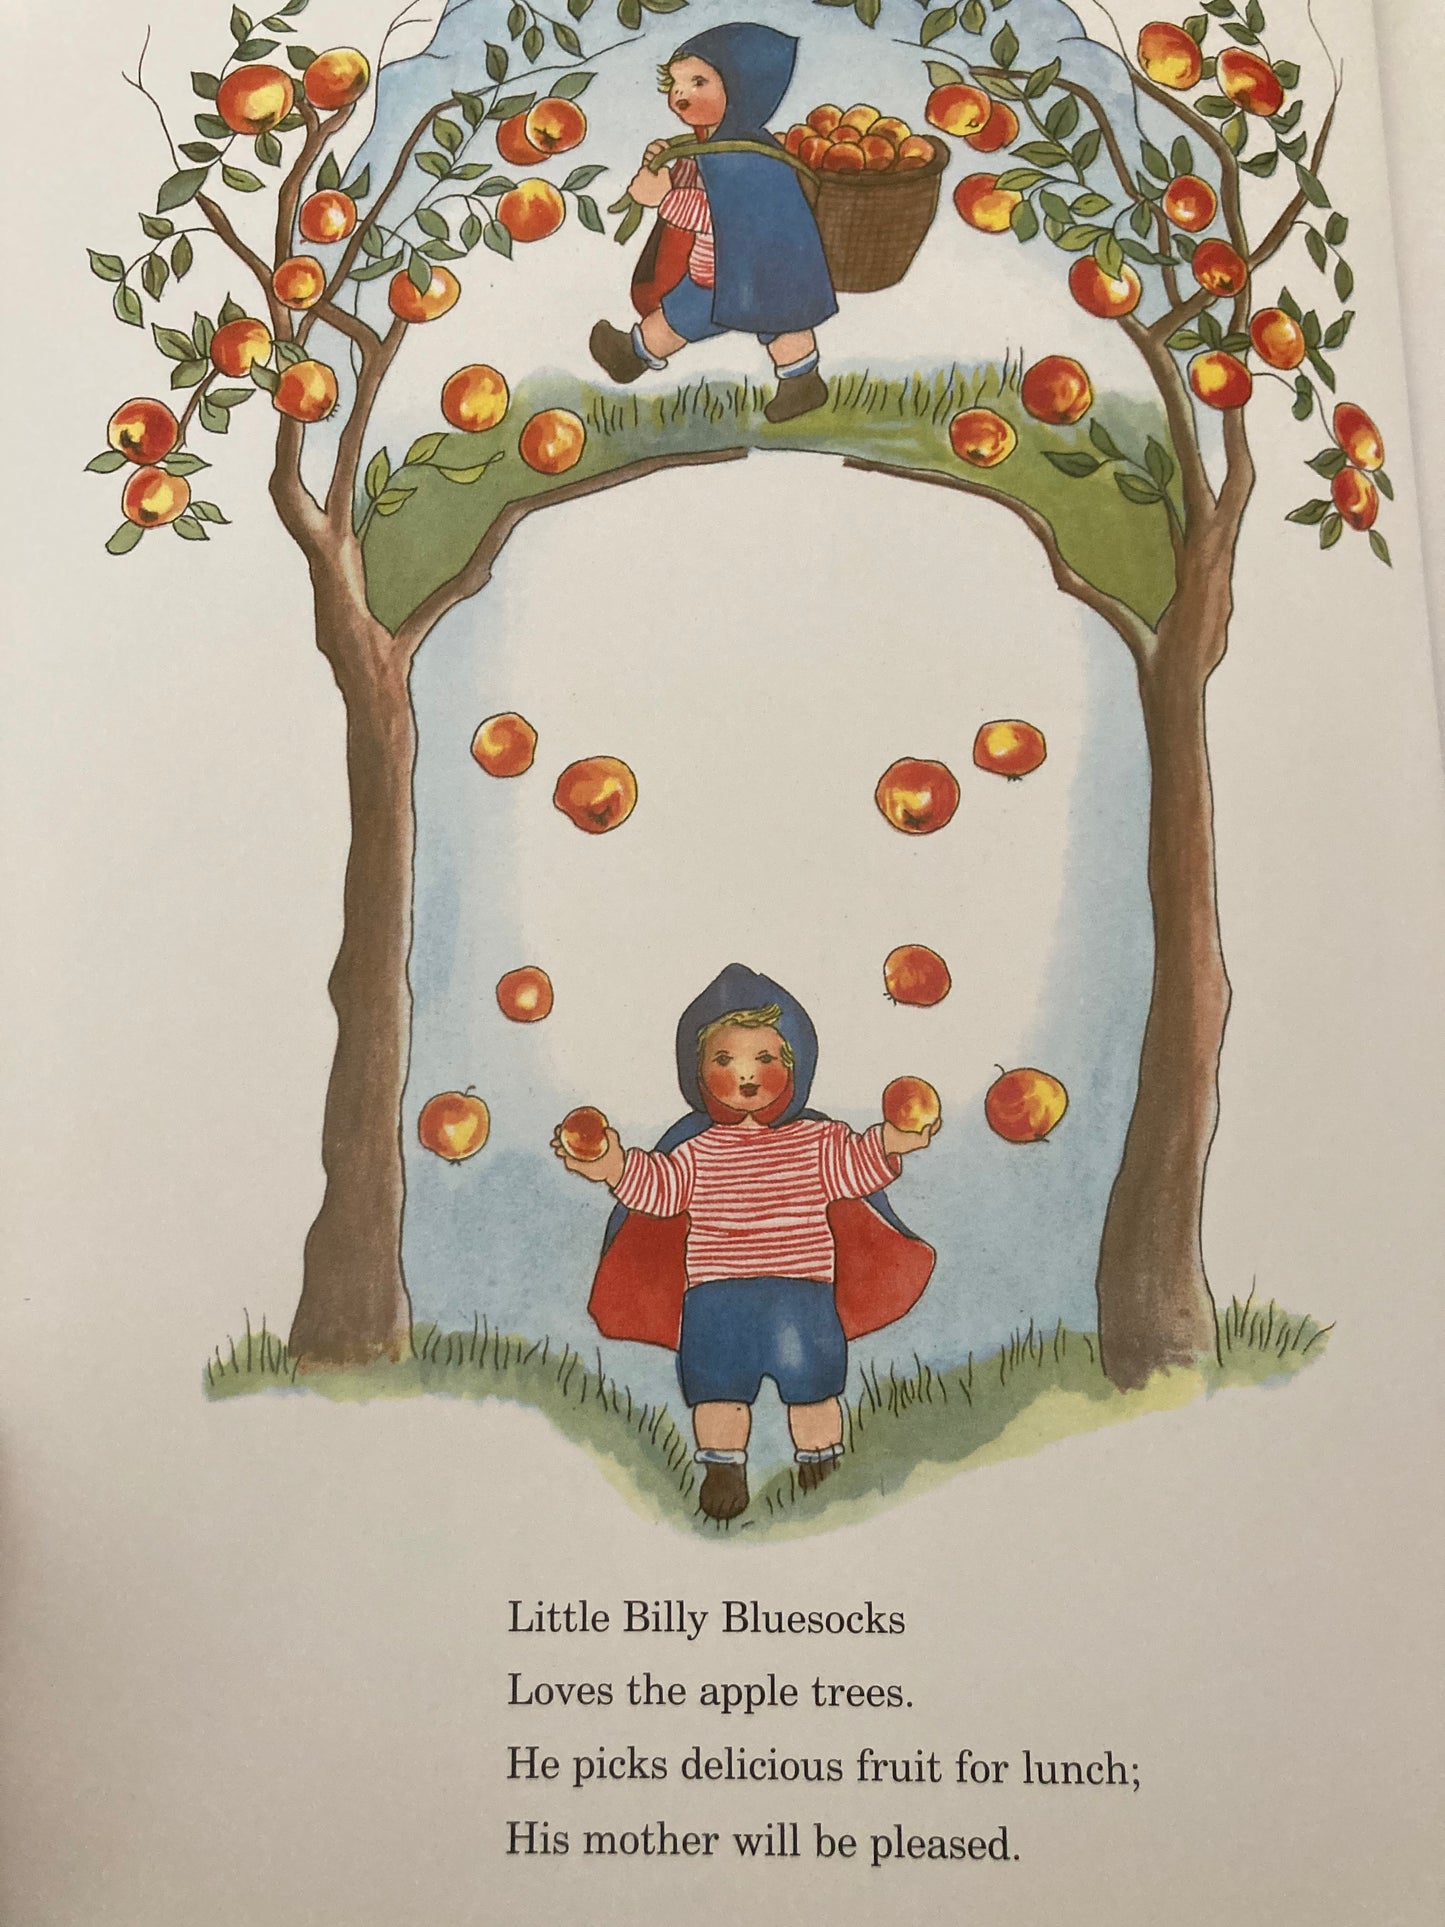 Livre d'images pour enfants - L'HISTOIRE DU PETIT BILLY BLUESOCKS